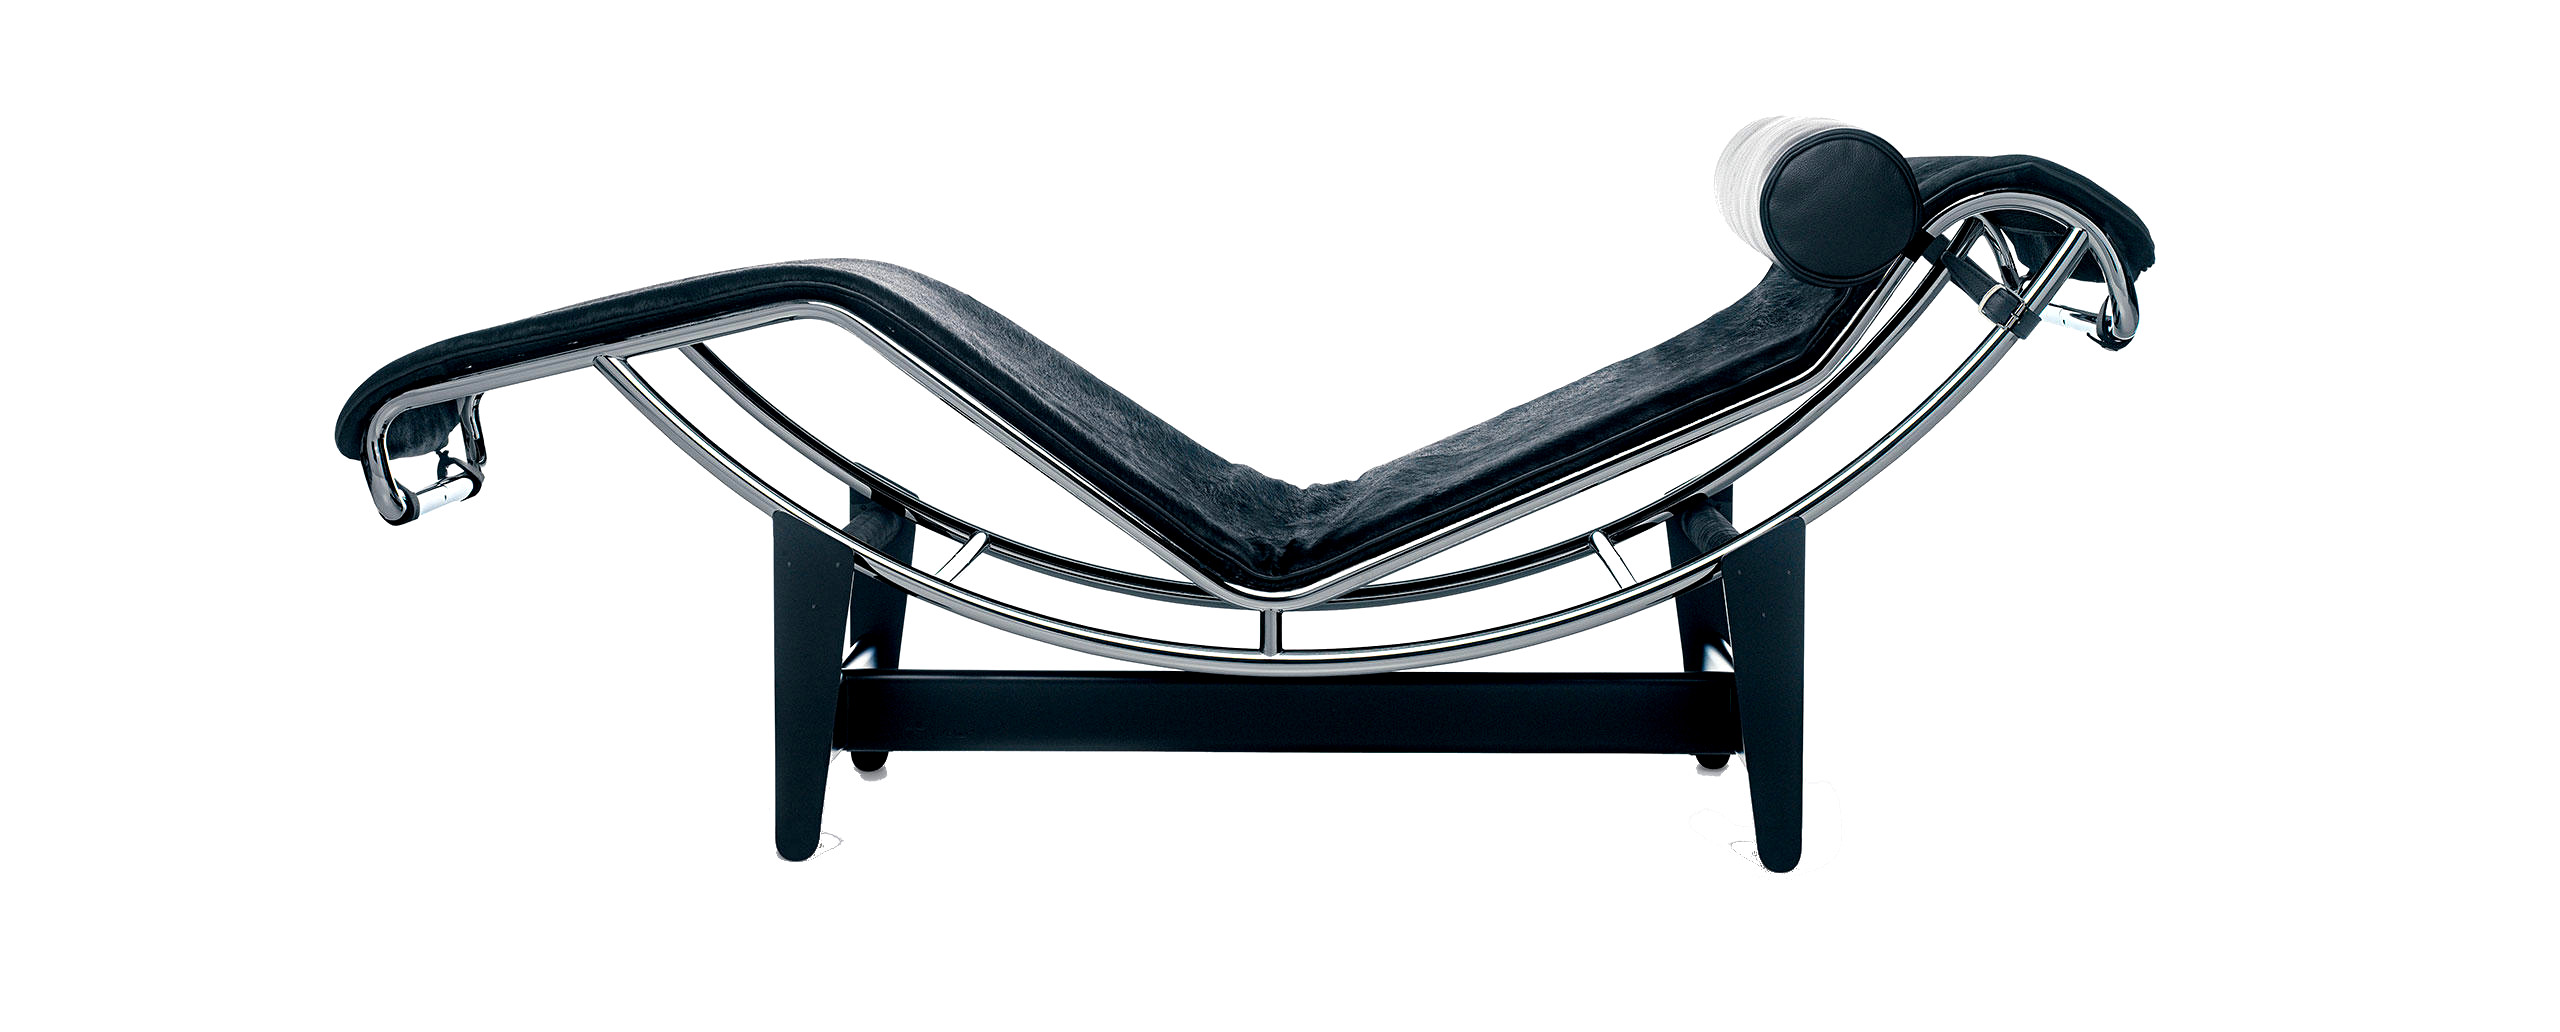 Chaise longue, Le Corbusier